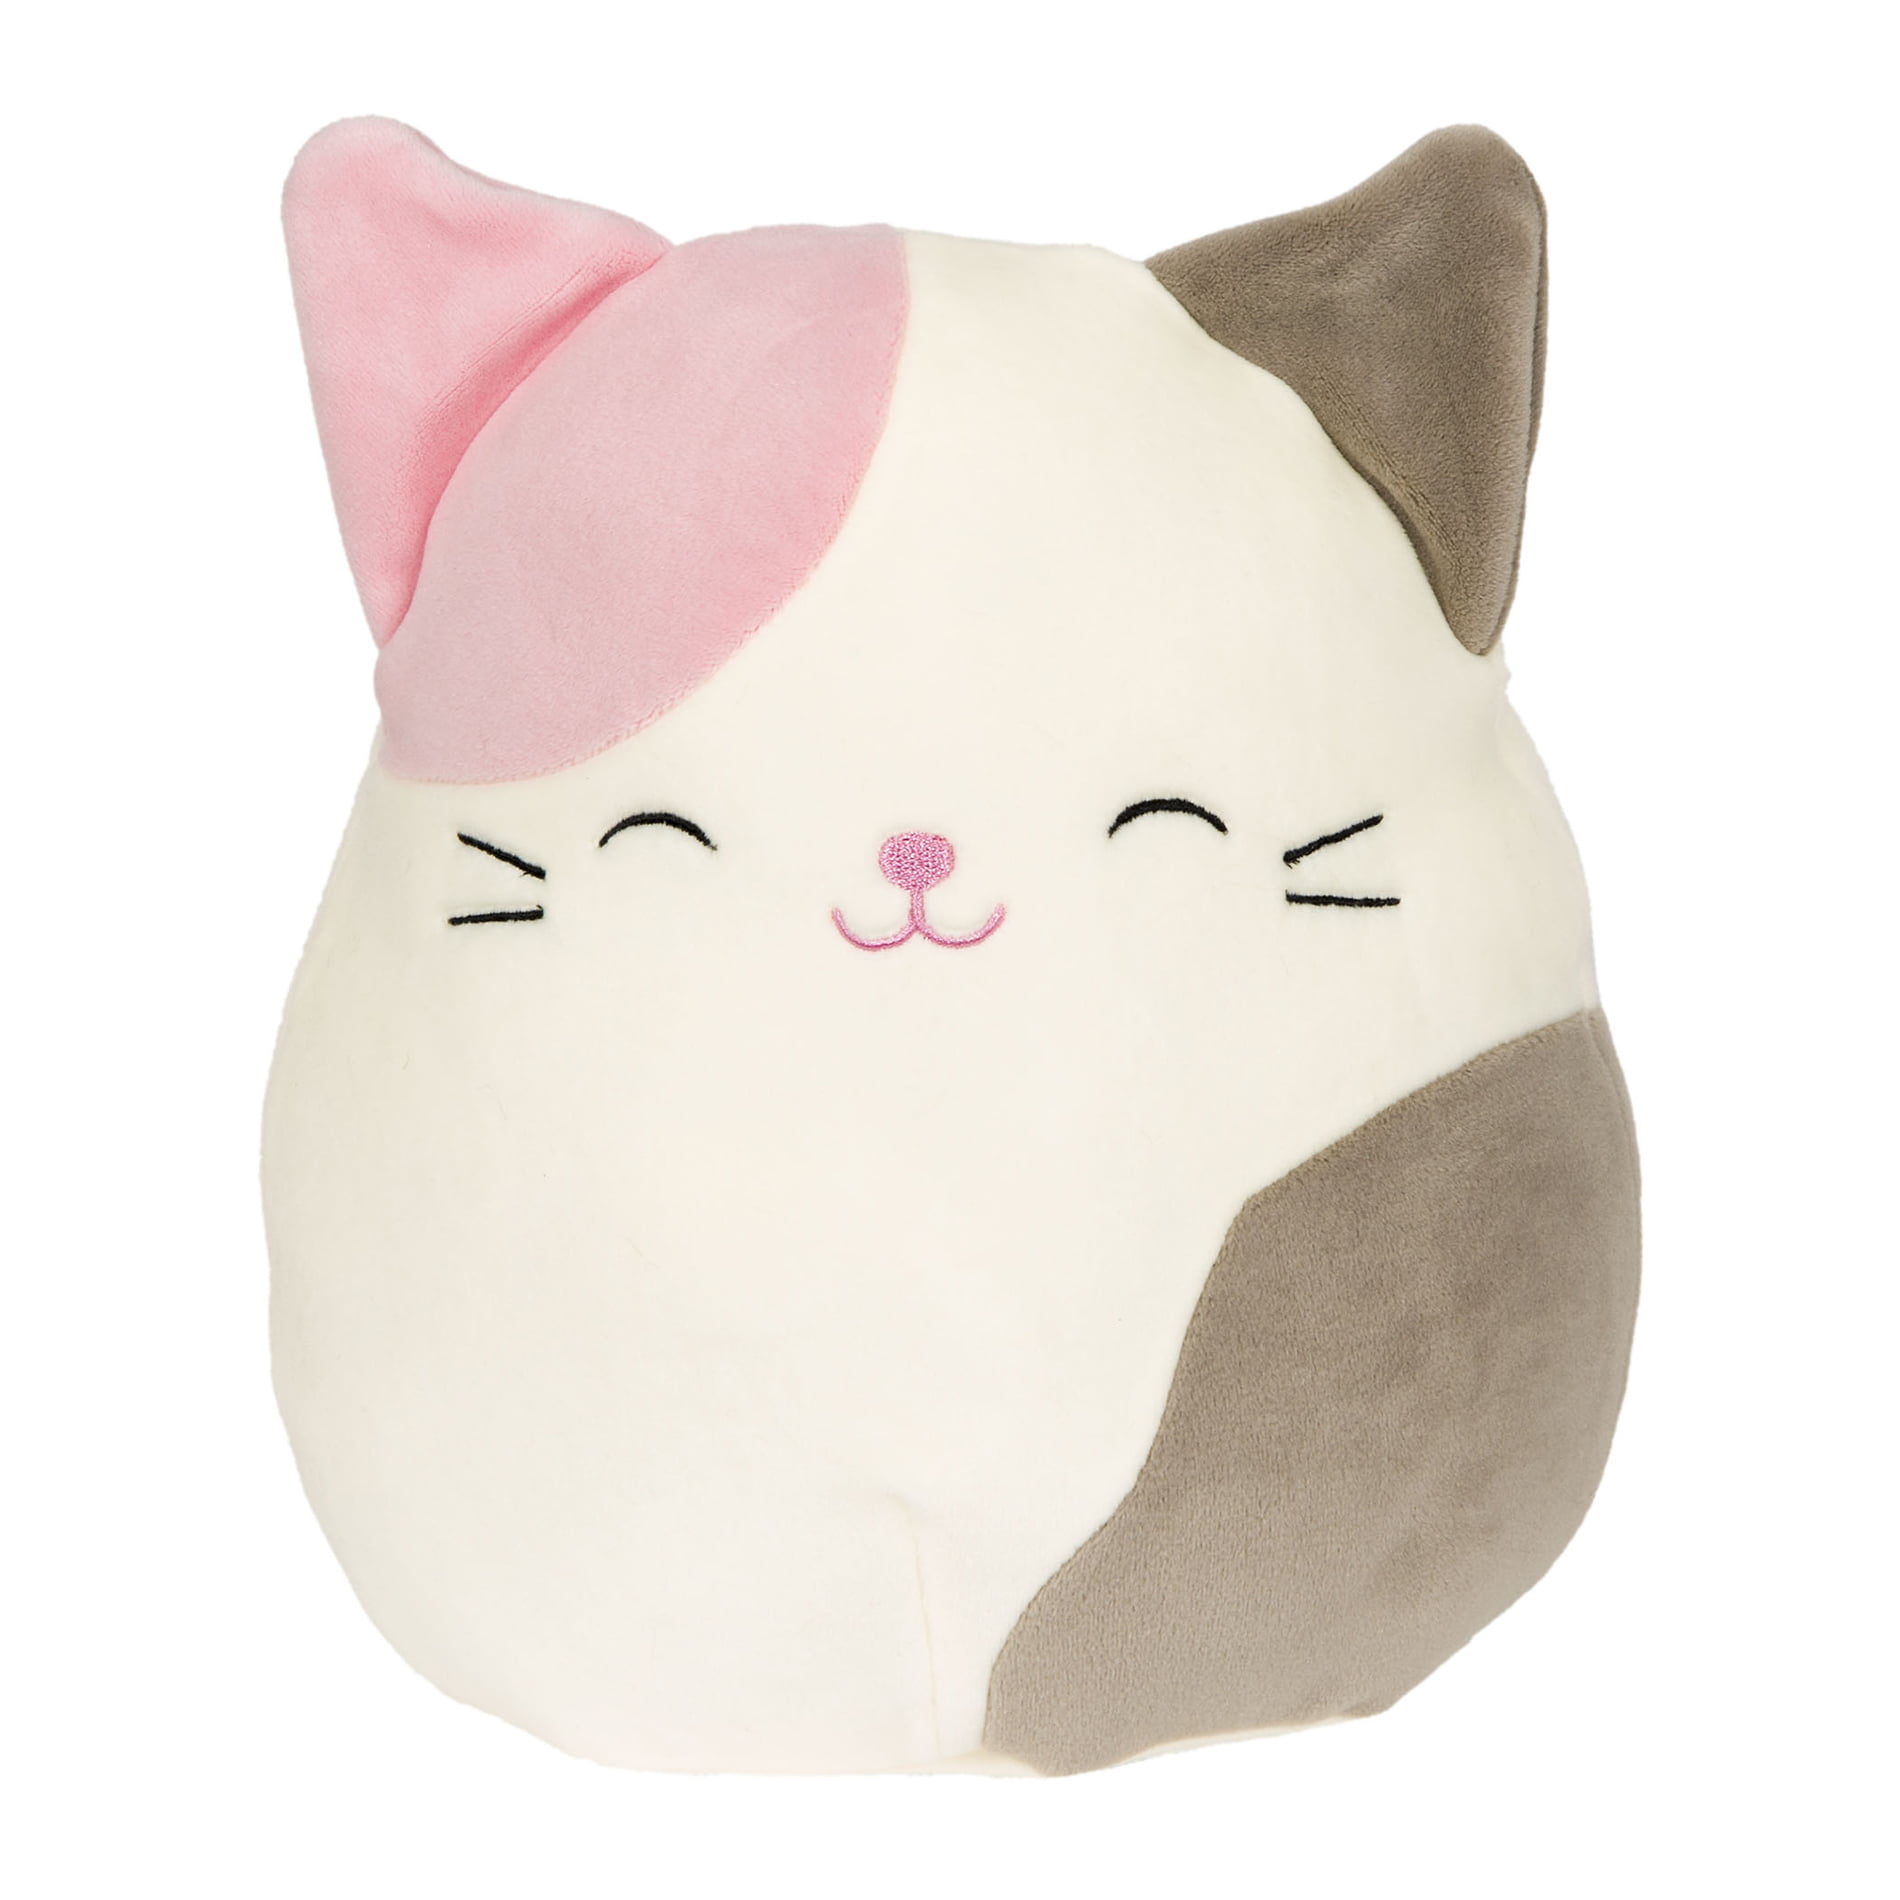 karina the cat squishmallow